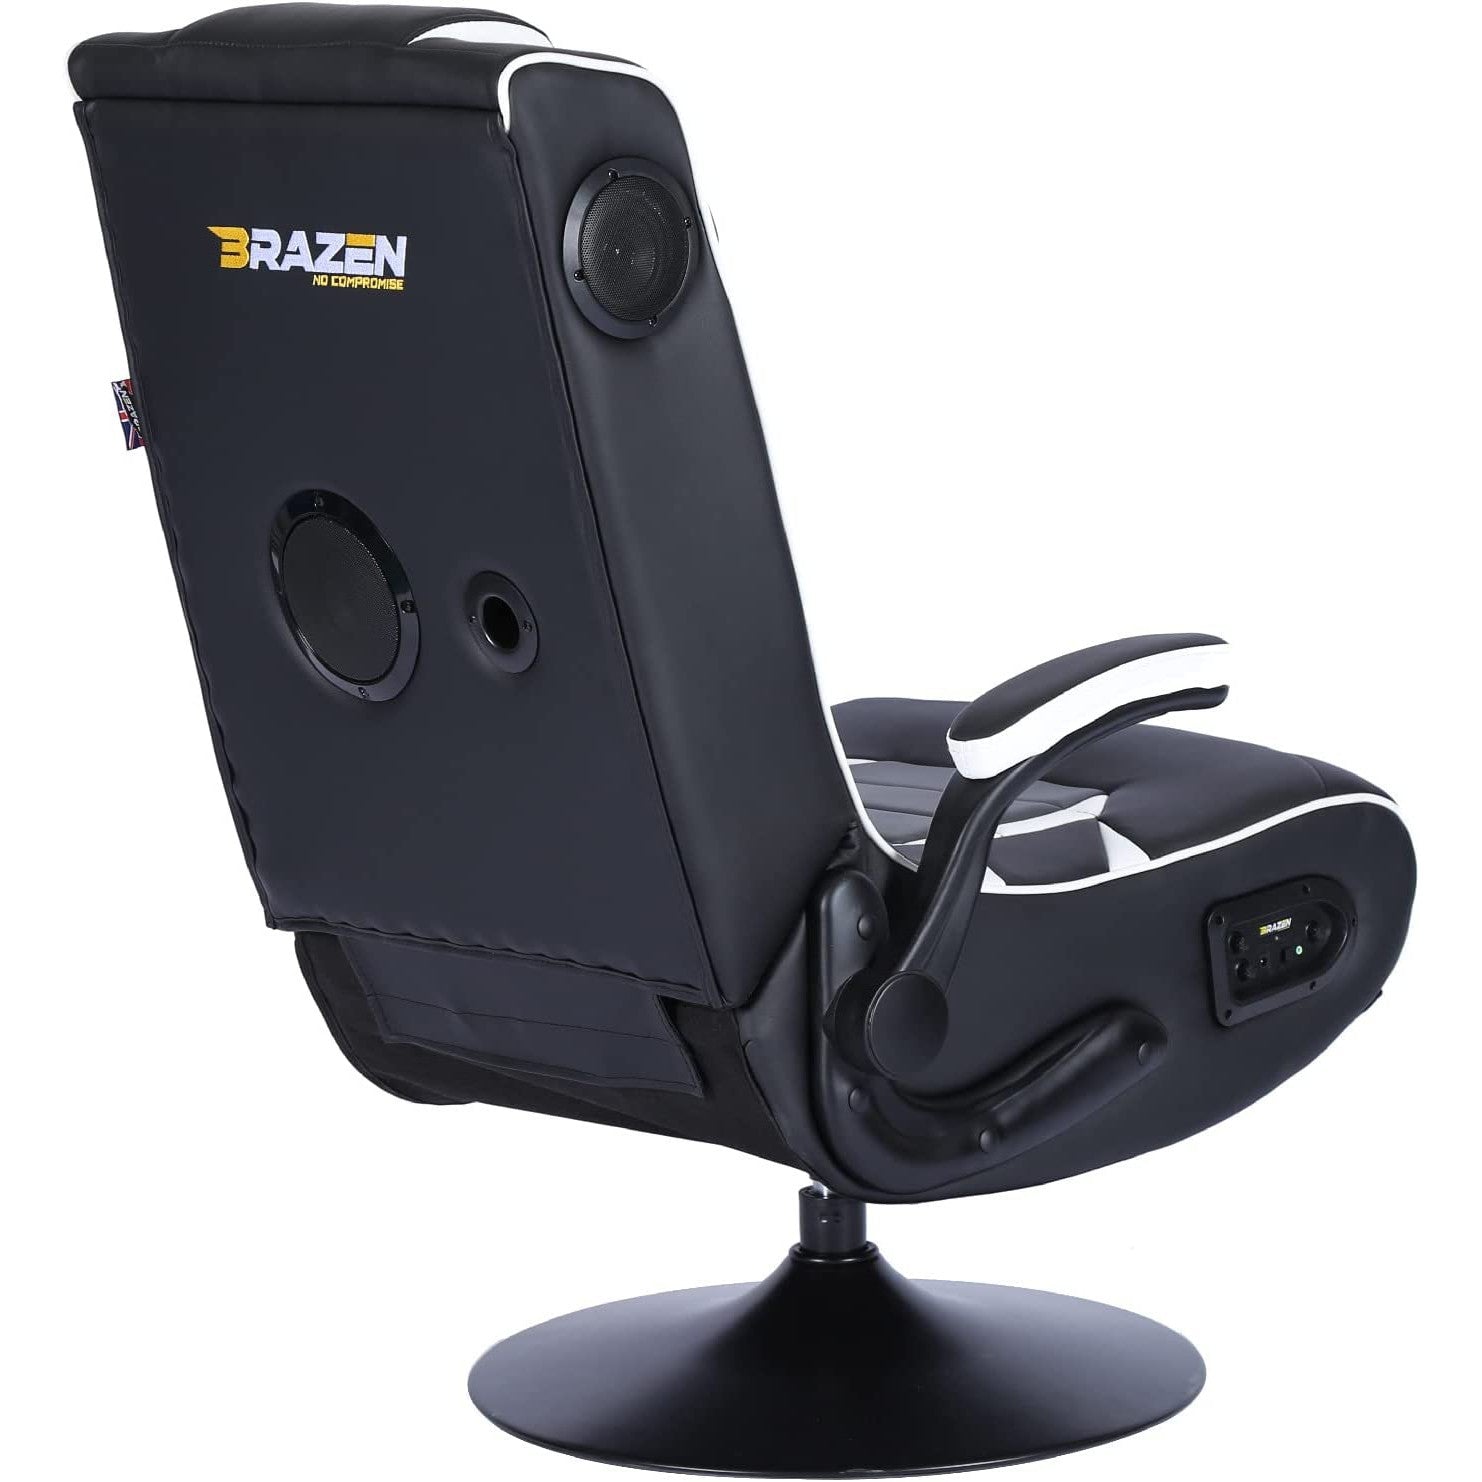 BraZen Panther Elite 2.1 Bluetooth Surround Sound Gaming Chair - Black / White - Refurbished Excellent